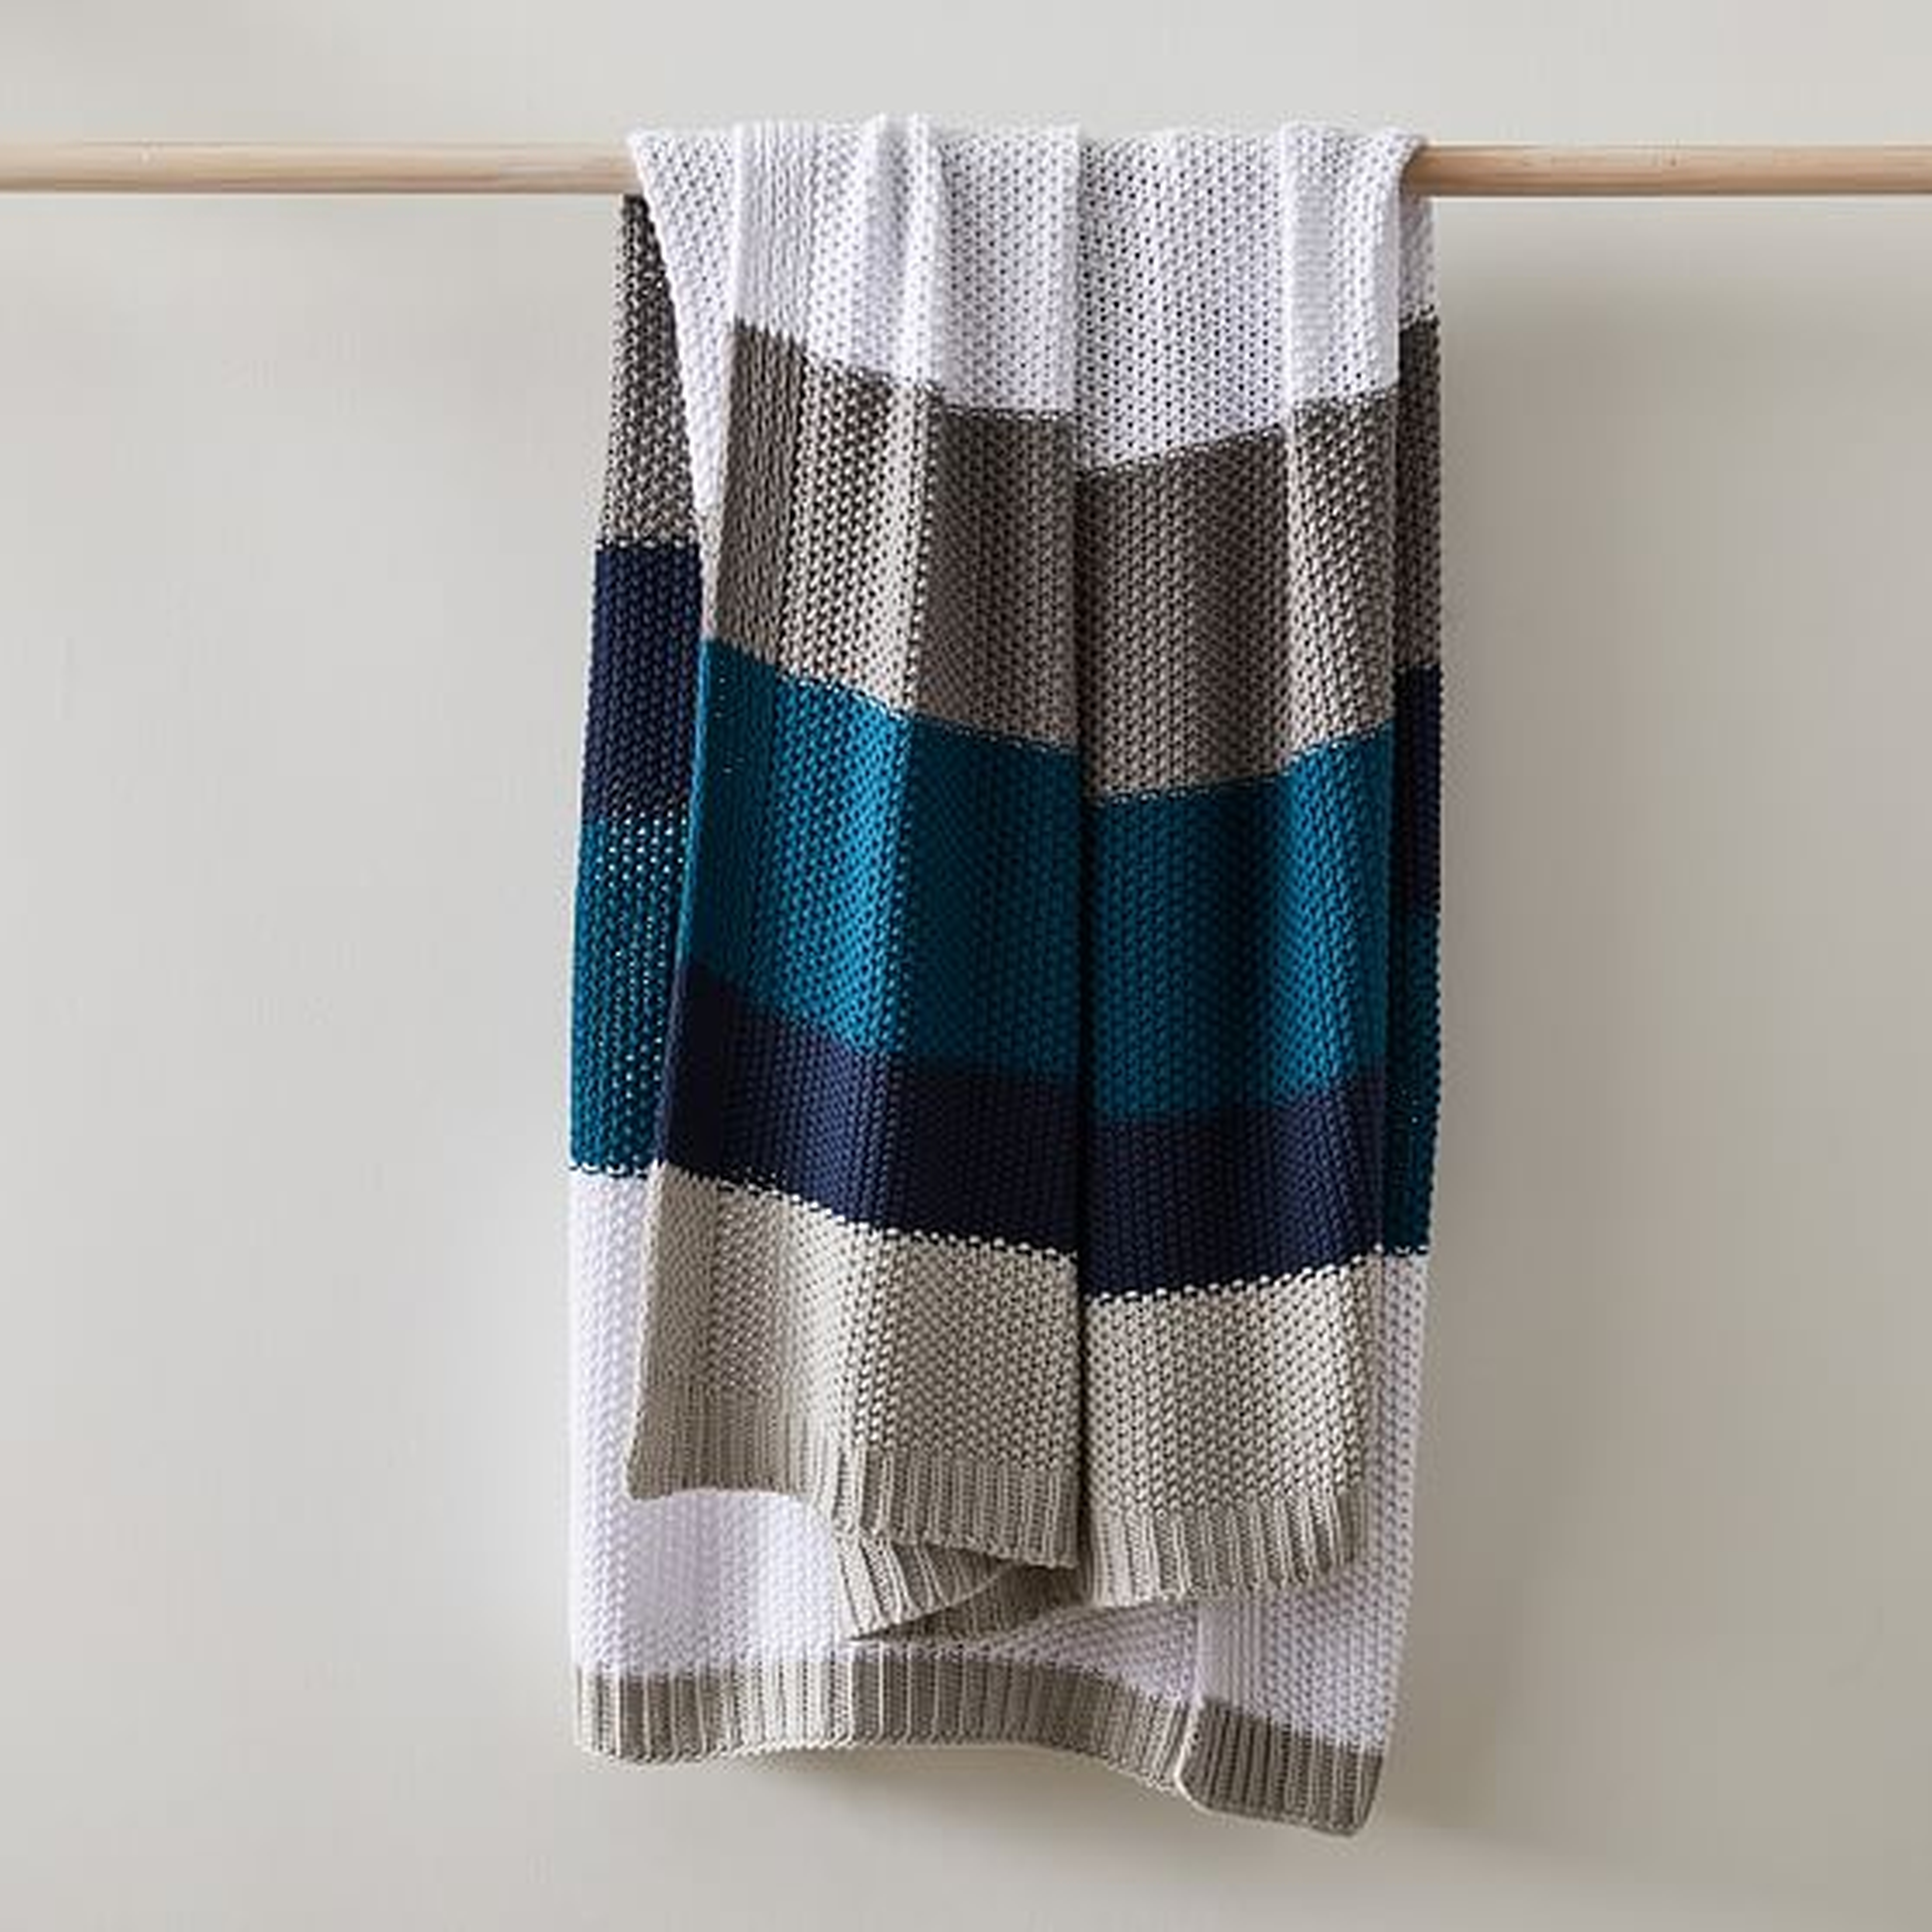 Modern Striped Cotton Knit Throw, 50"x60", Midnight - West Elm